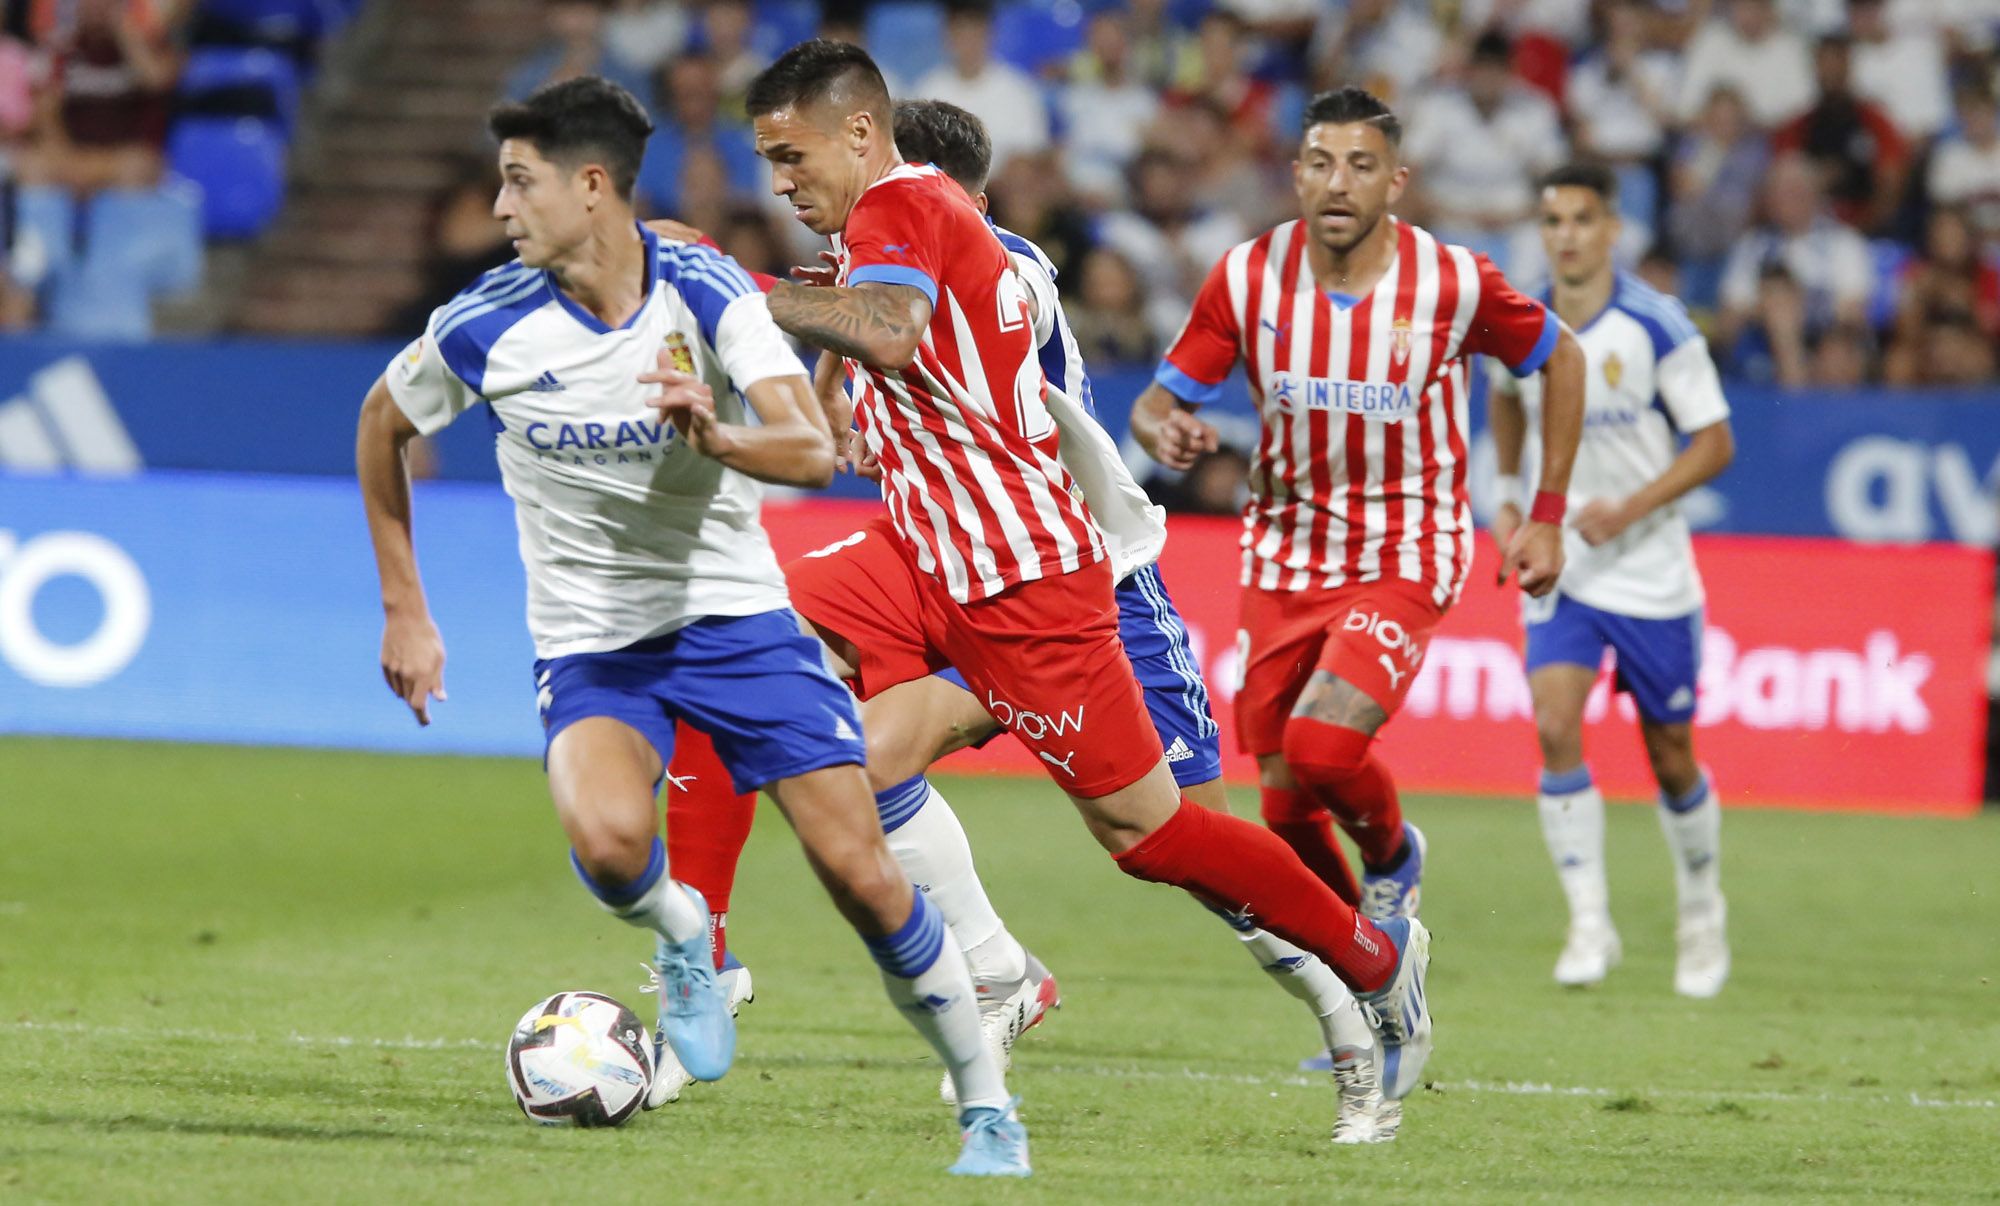 EN IMÁGENES: Así fue el partido entre el Zaragoza y el Sporting